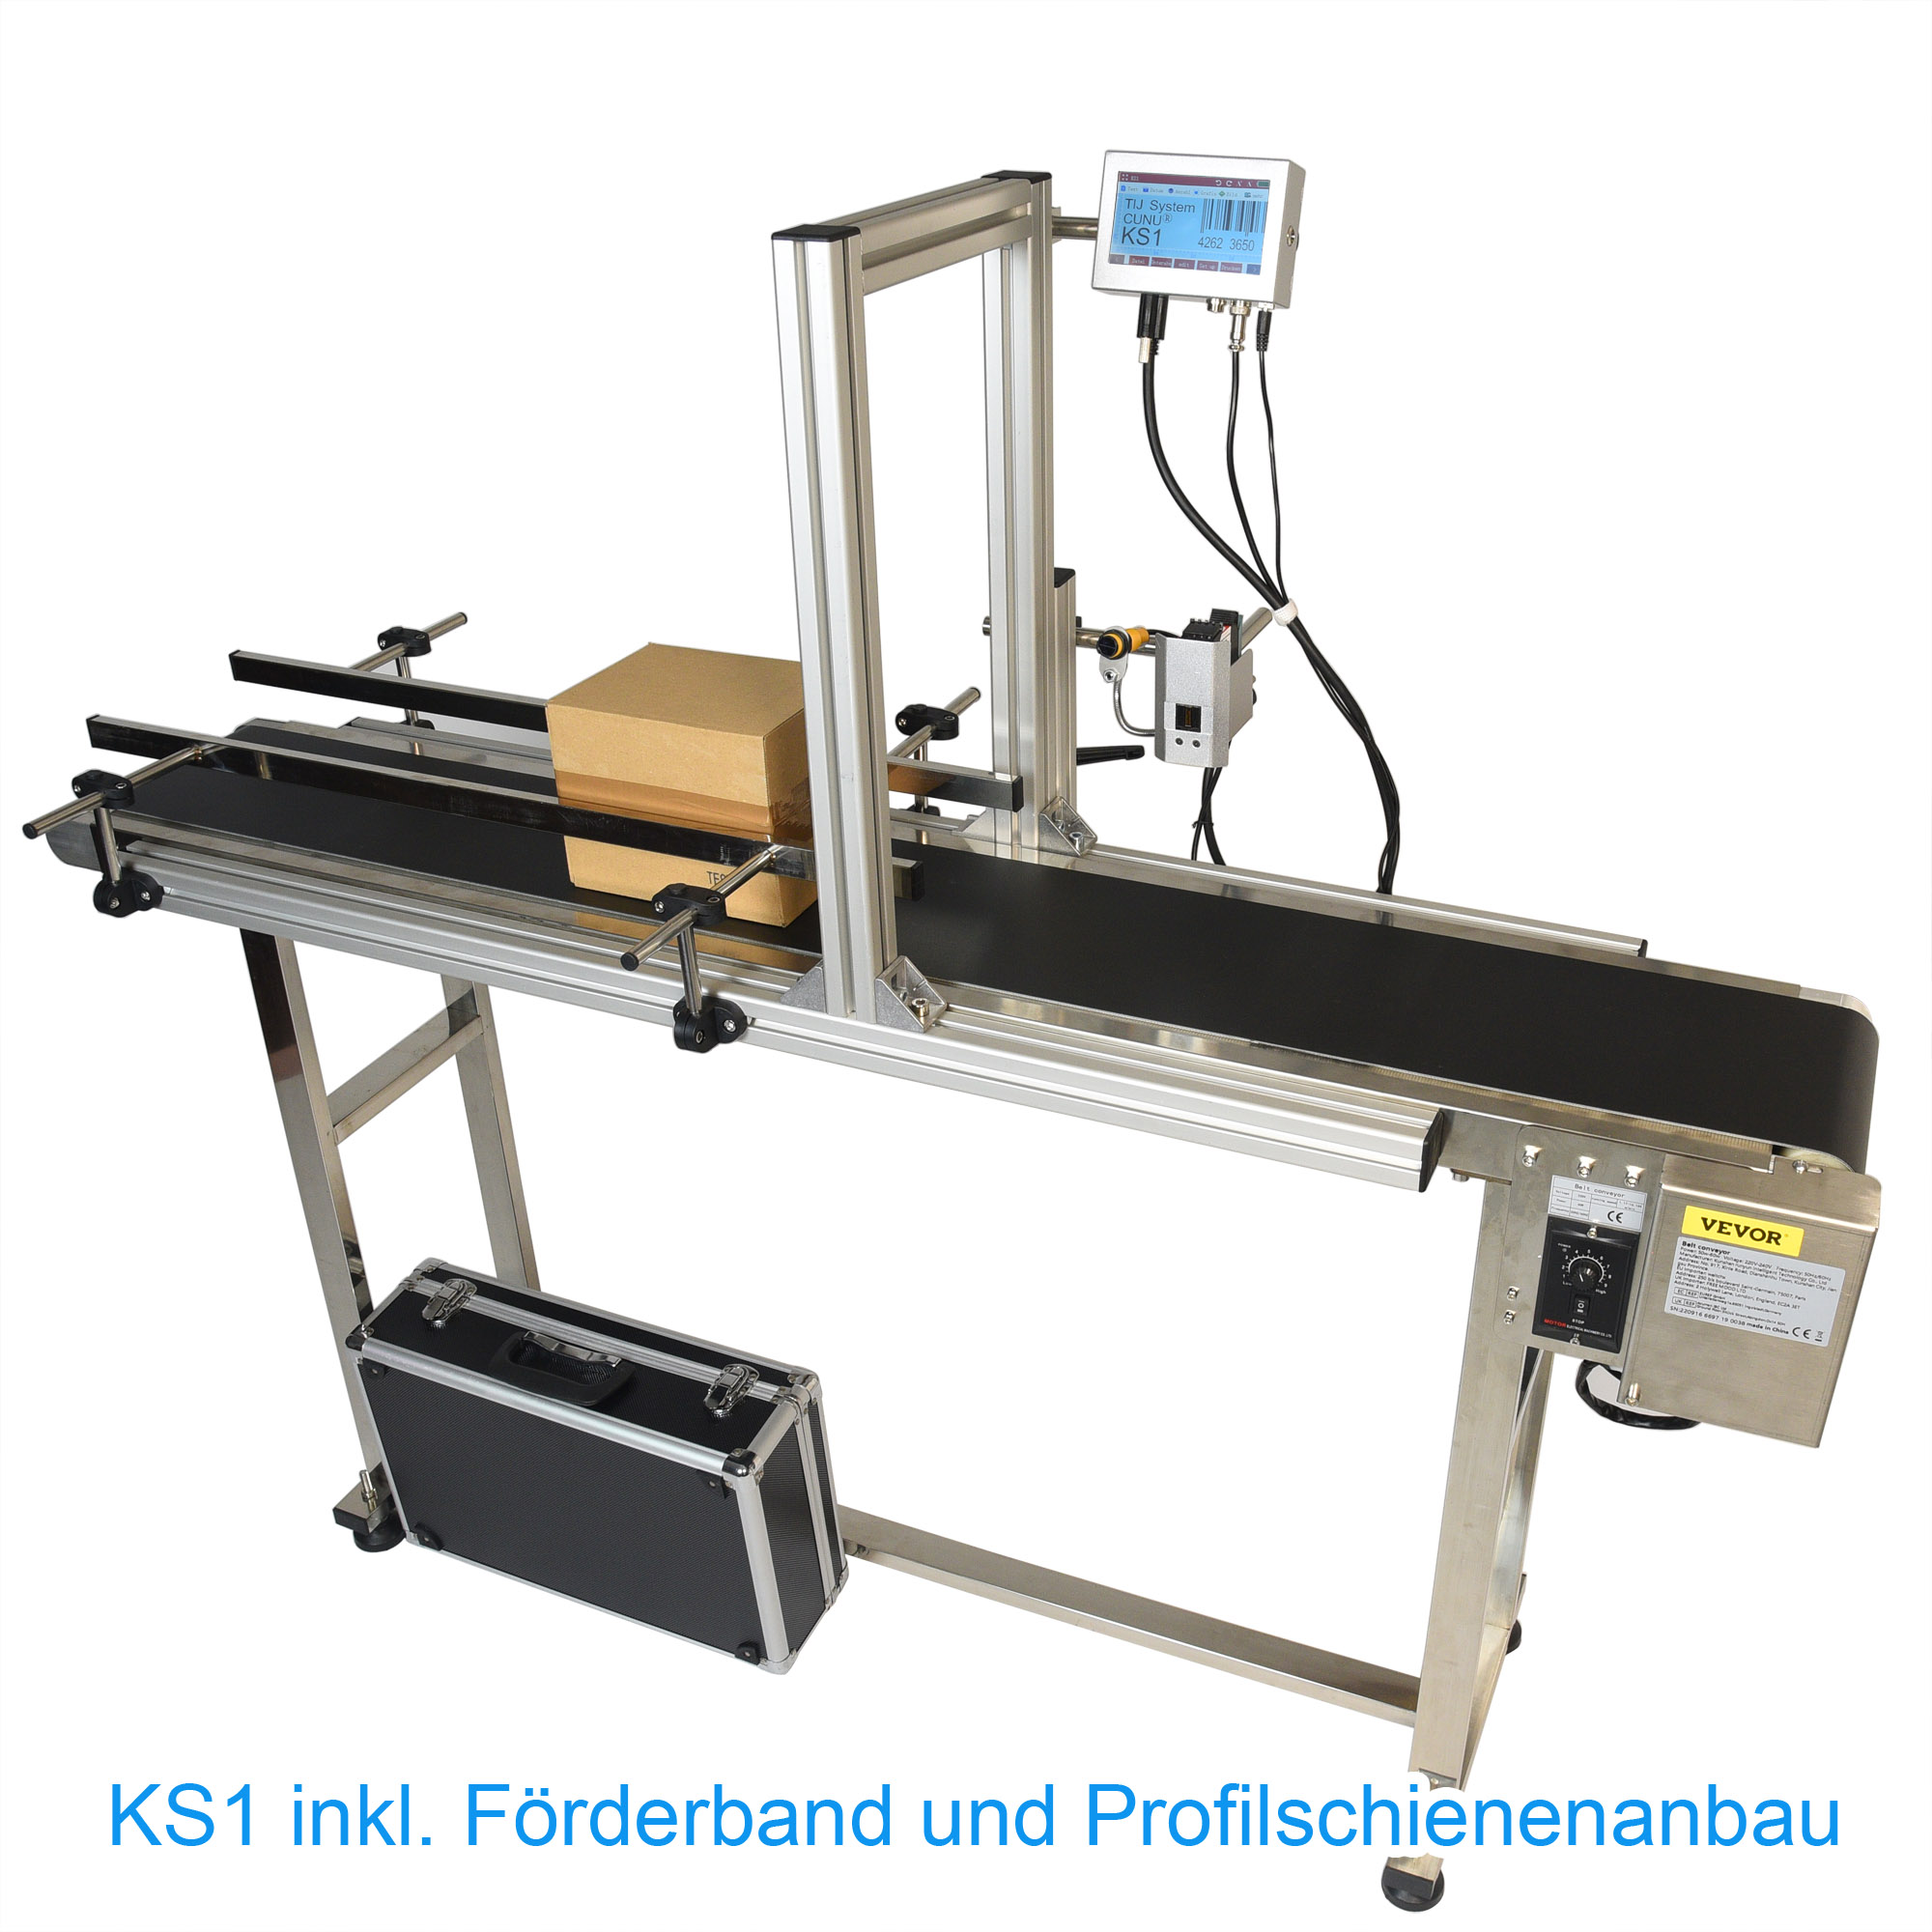 Thermal Inkjet KS1 inkl. Förderband für digitale Produktkennzeichnung